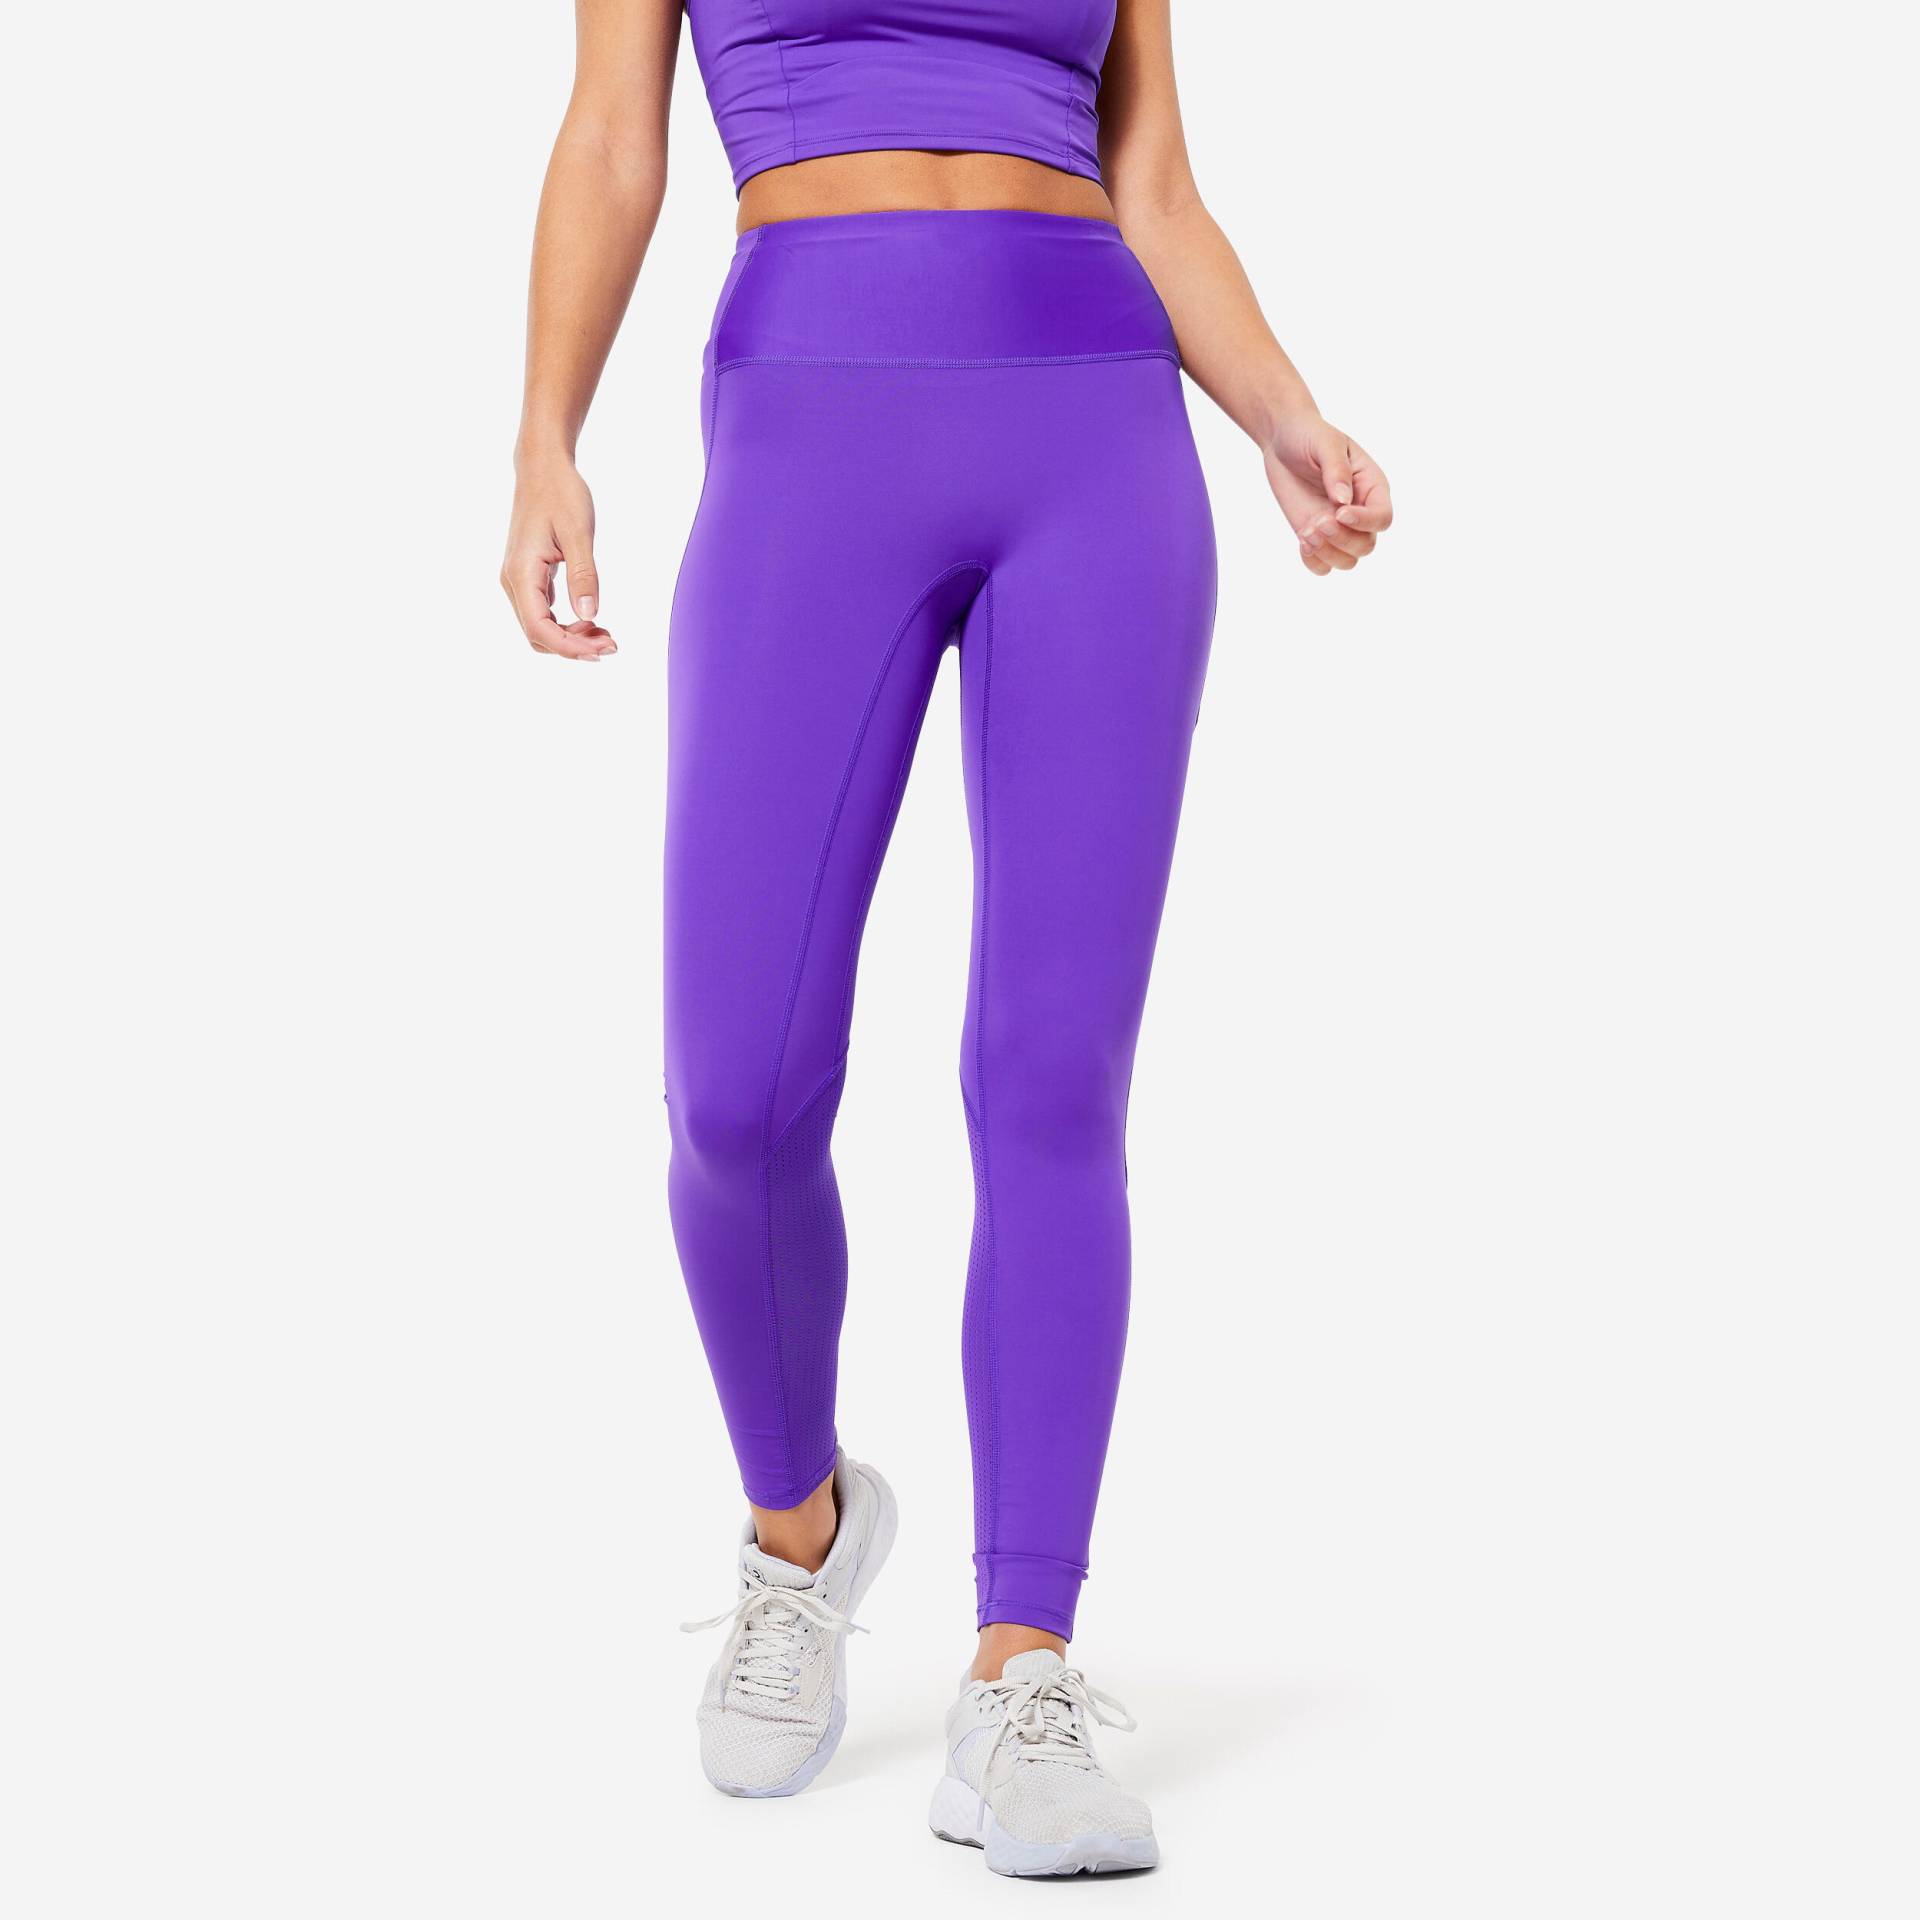 Leggings Damen hoher Taillenbund - FTI500A violett von Domyos